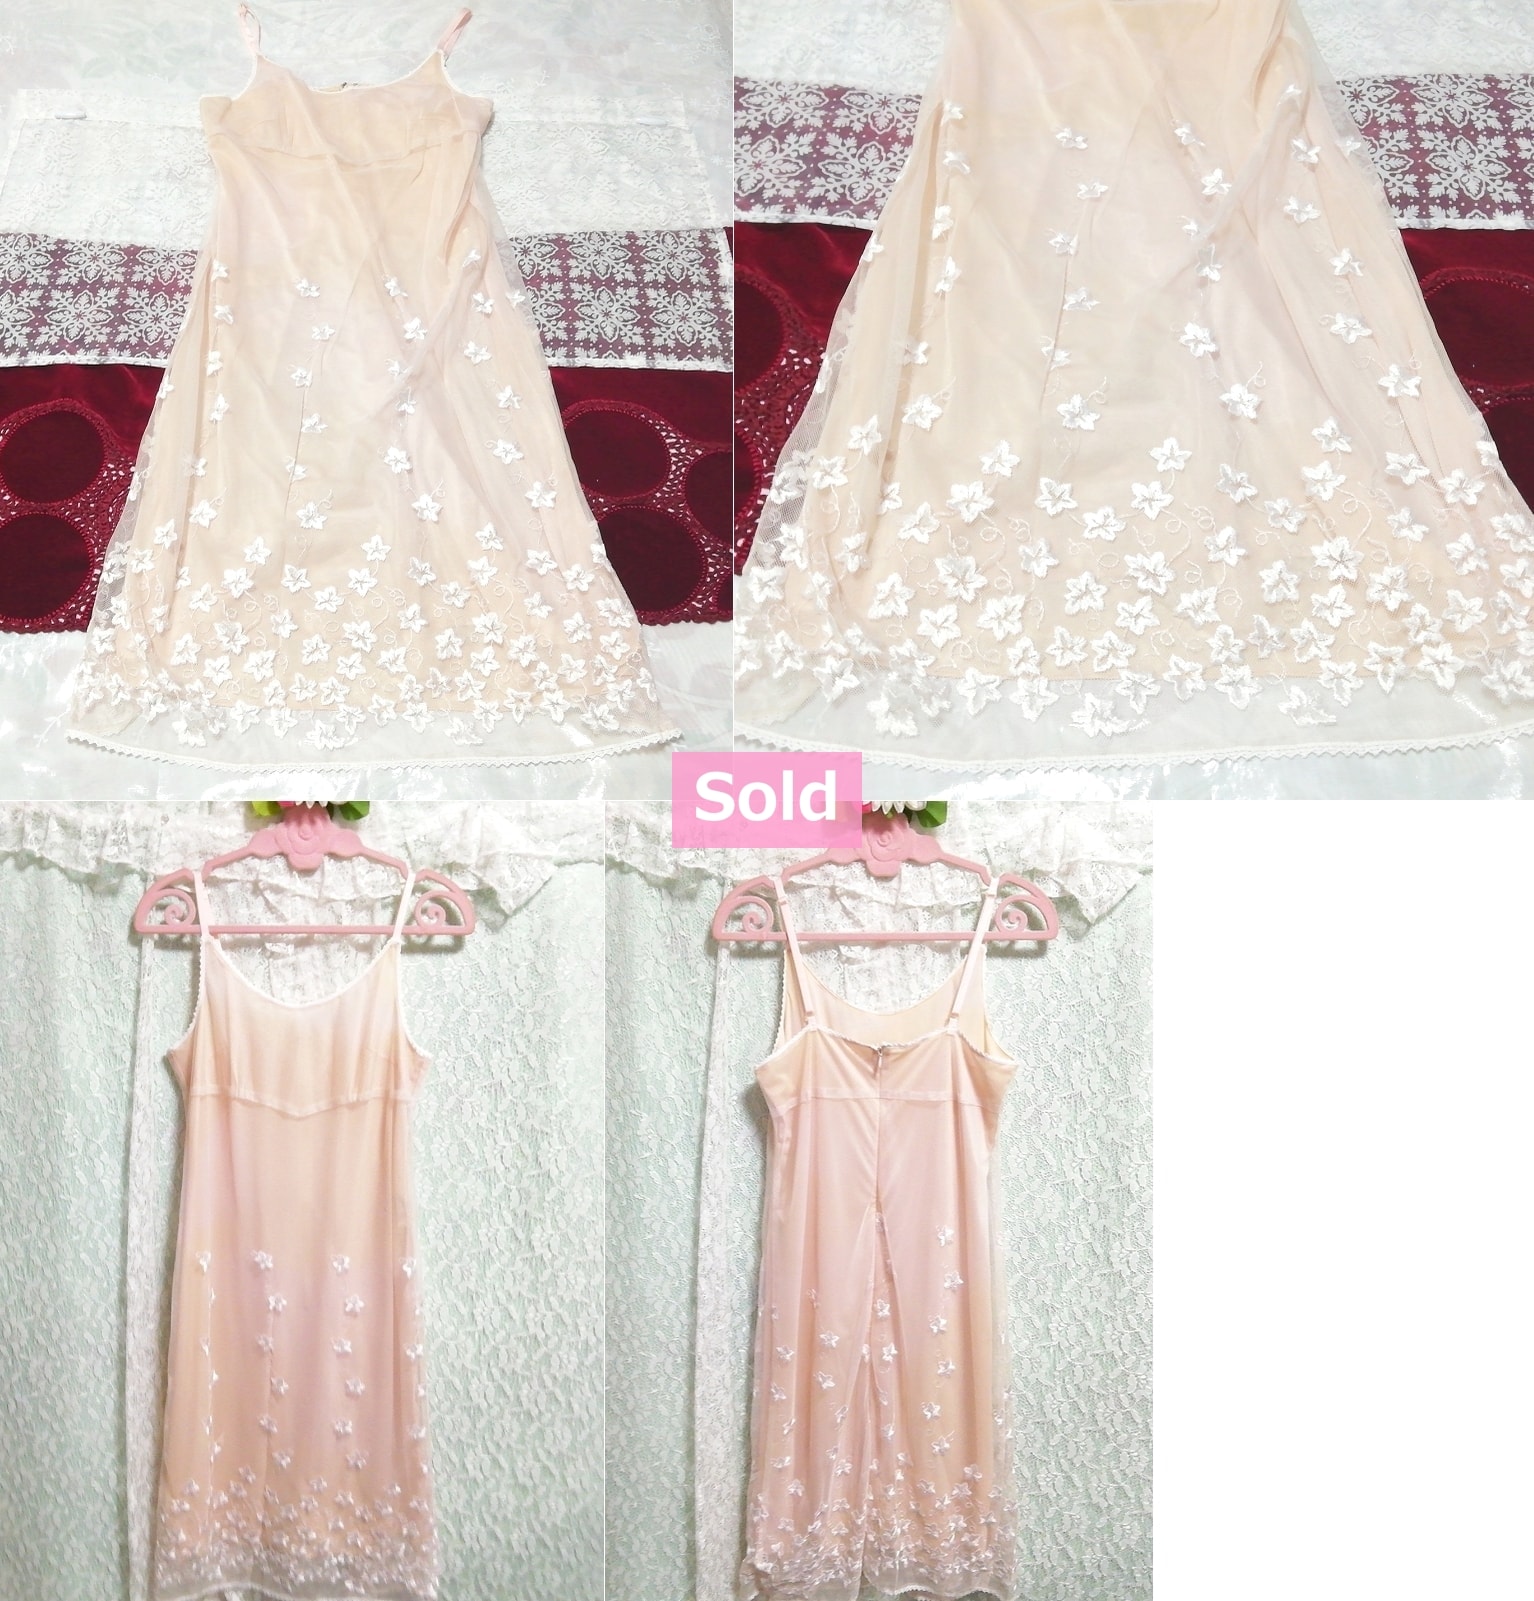 Robe de nuit en dentelle brodée de fleurs roses et blanches, camisole, robe babydoll, mode, mode féminine, camisole